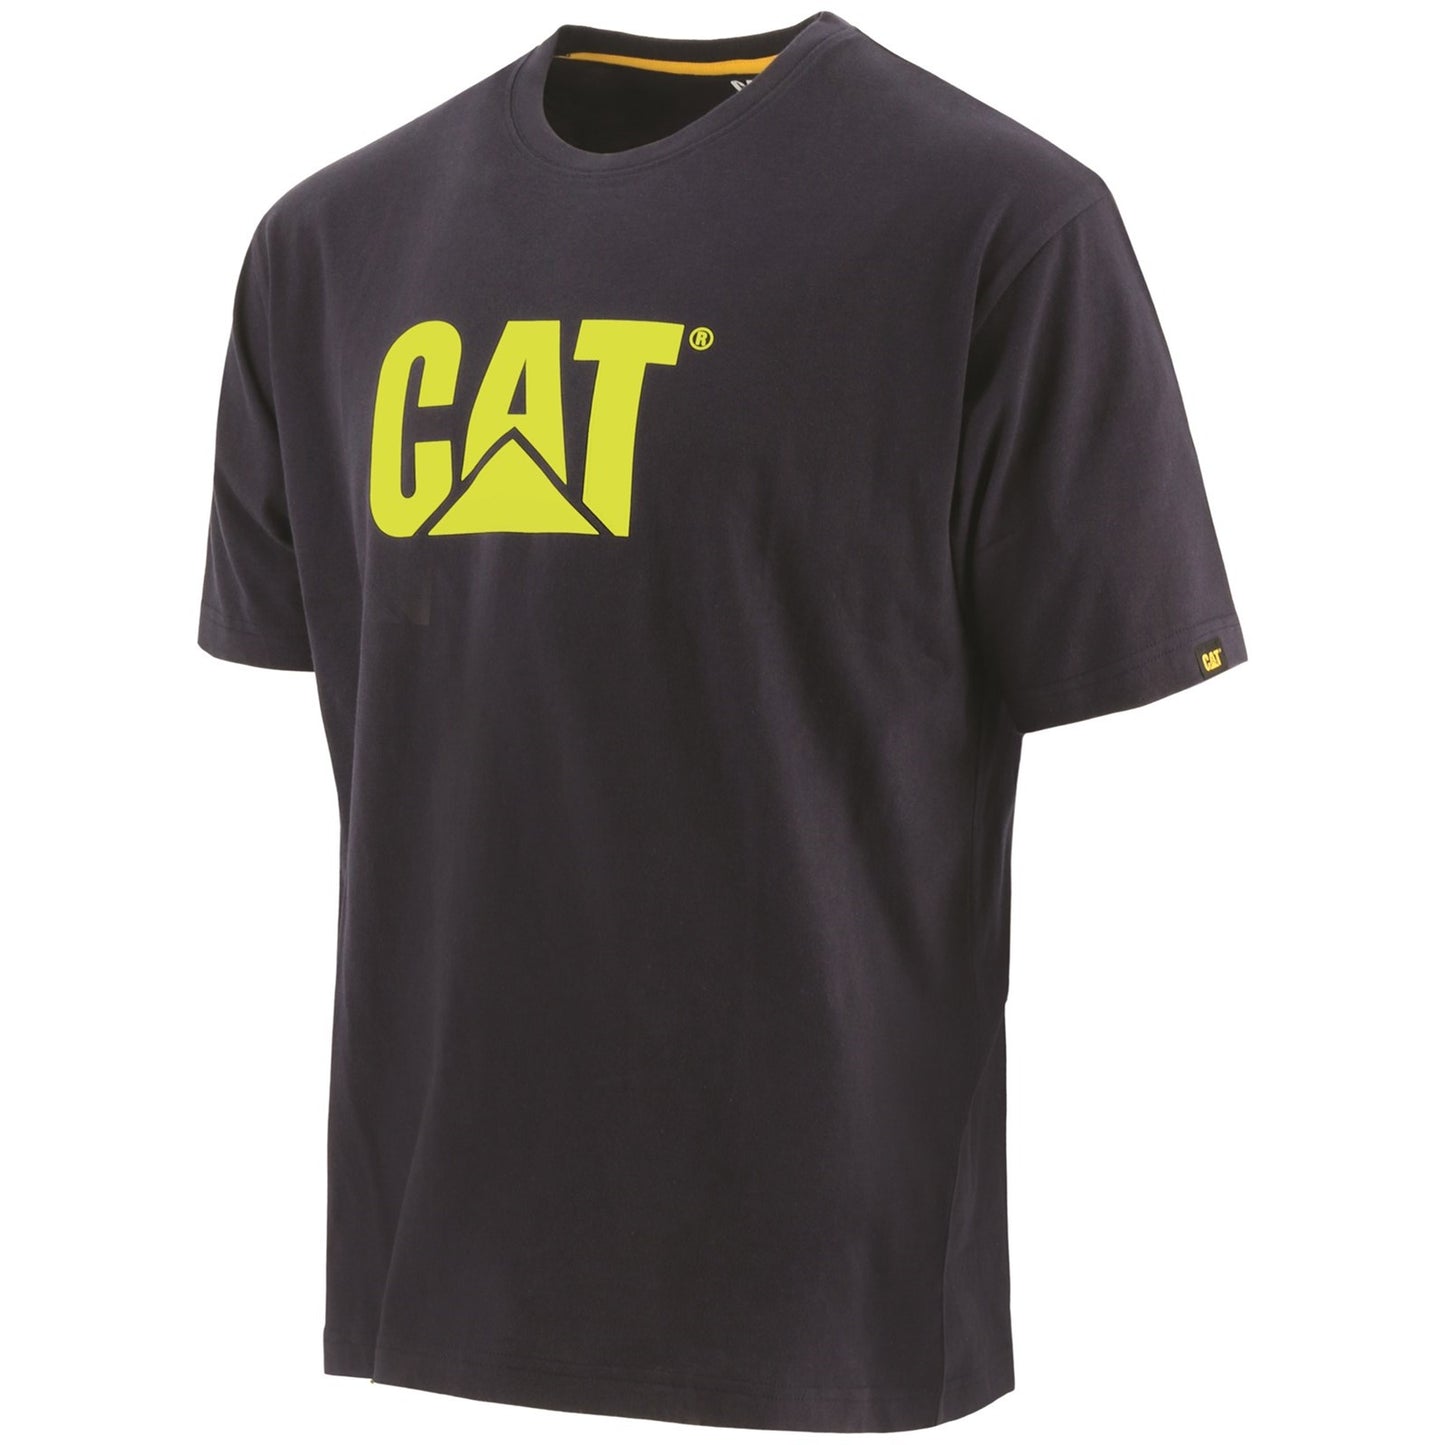 Trademark Logo T-Shirt, Caterpillar